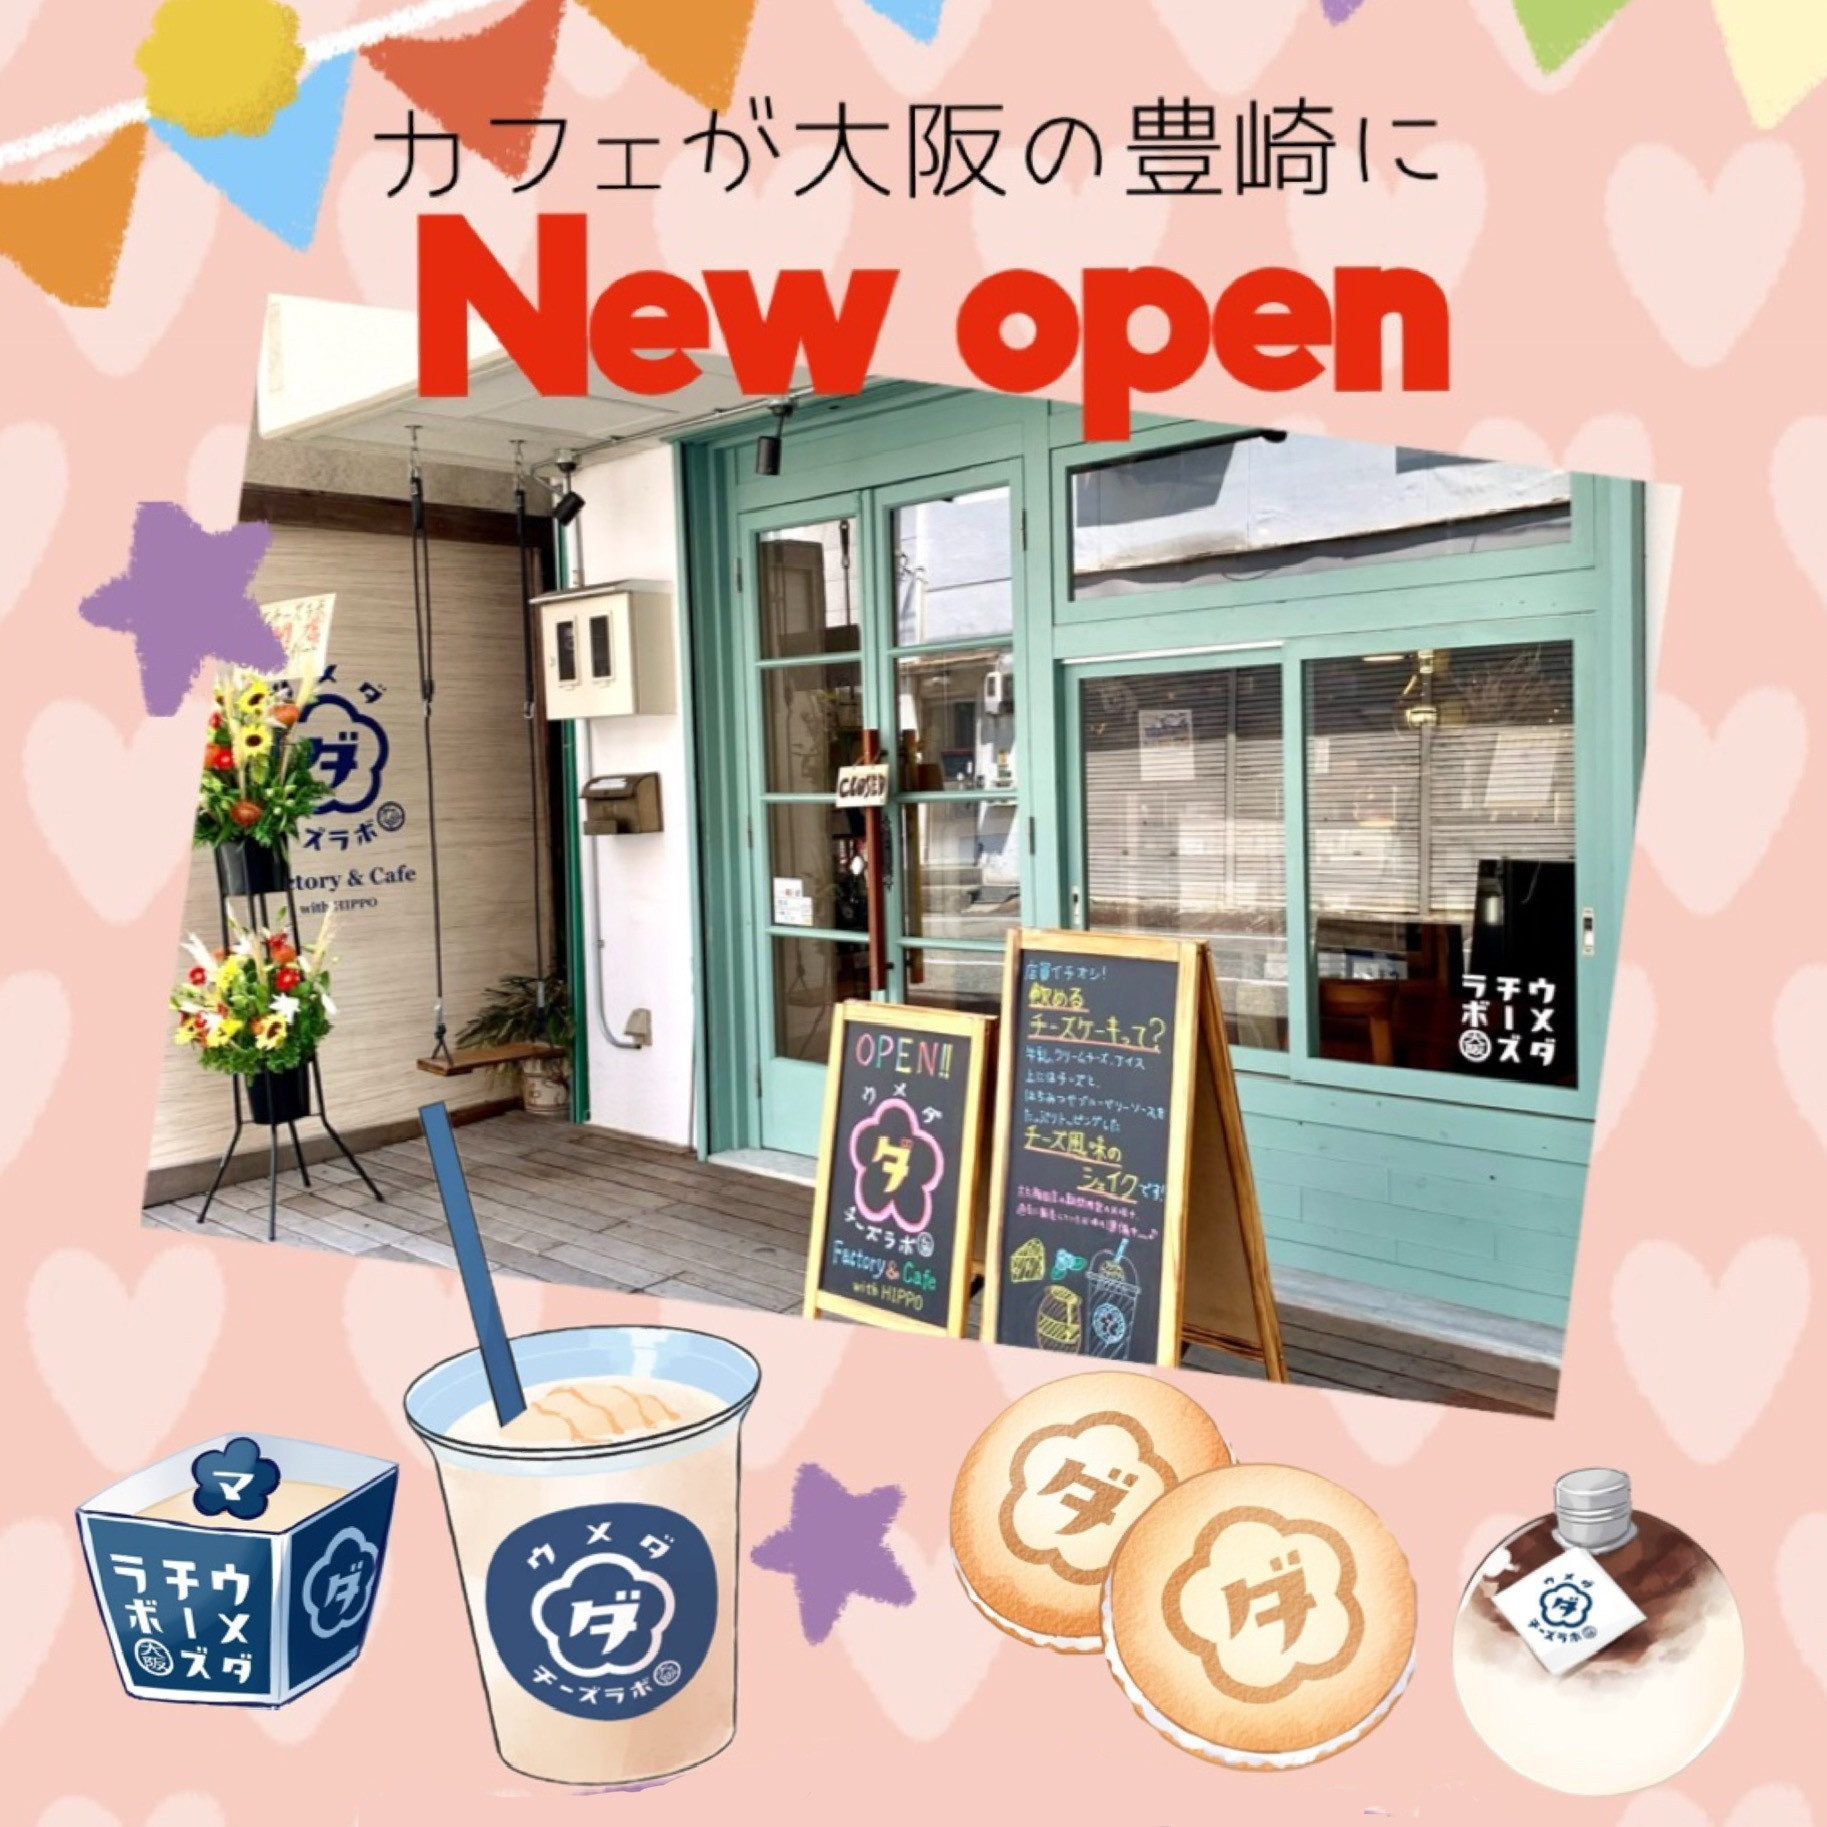 ウメダチーズラボ Factory ＆ Cafe with HIPPO オープンのお知らせ。